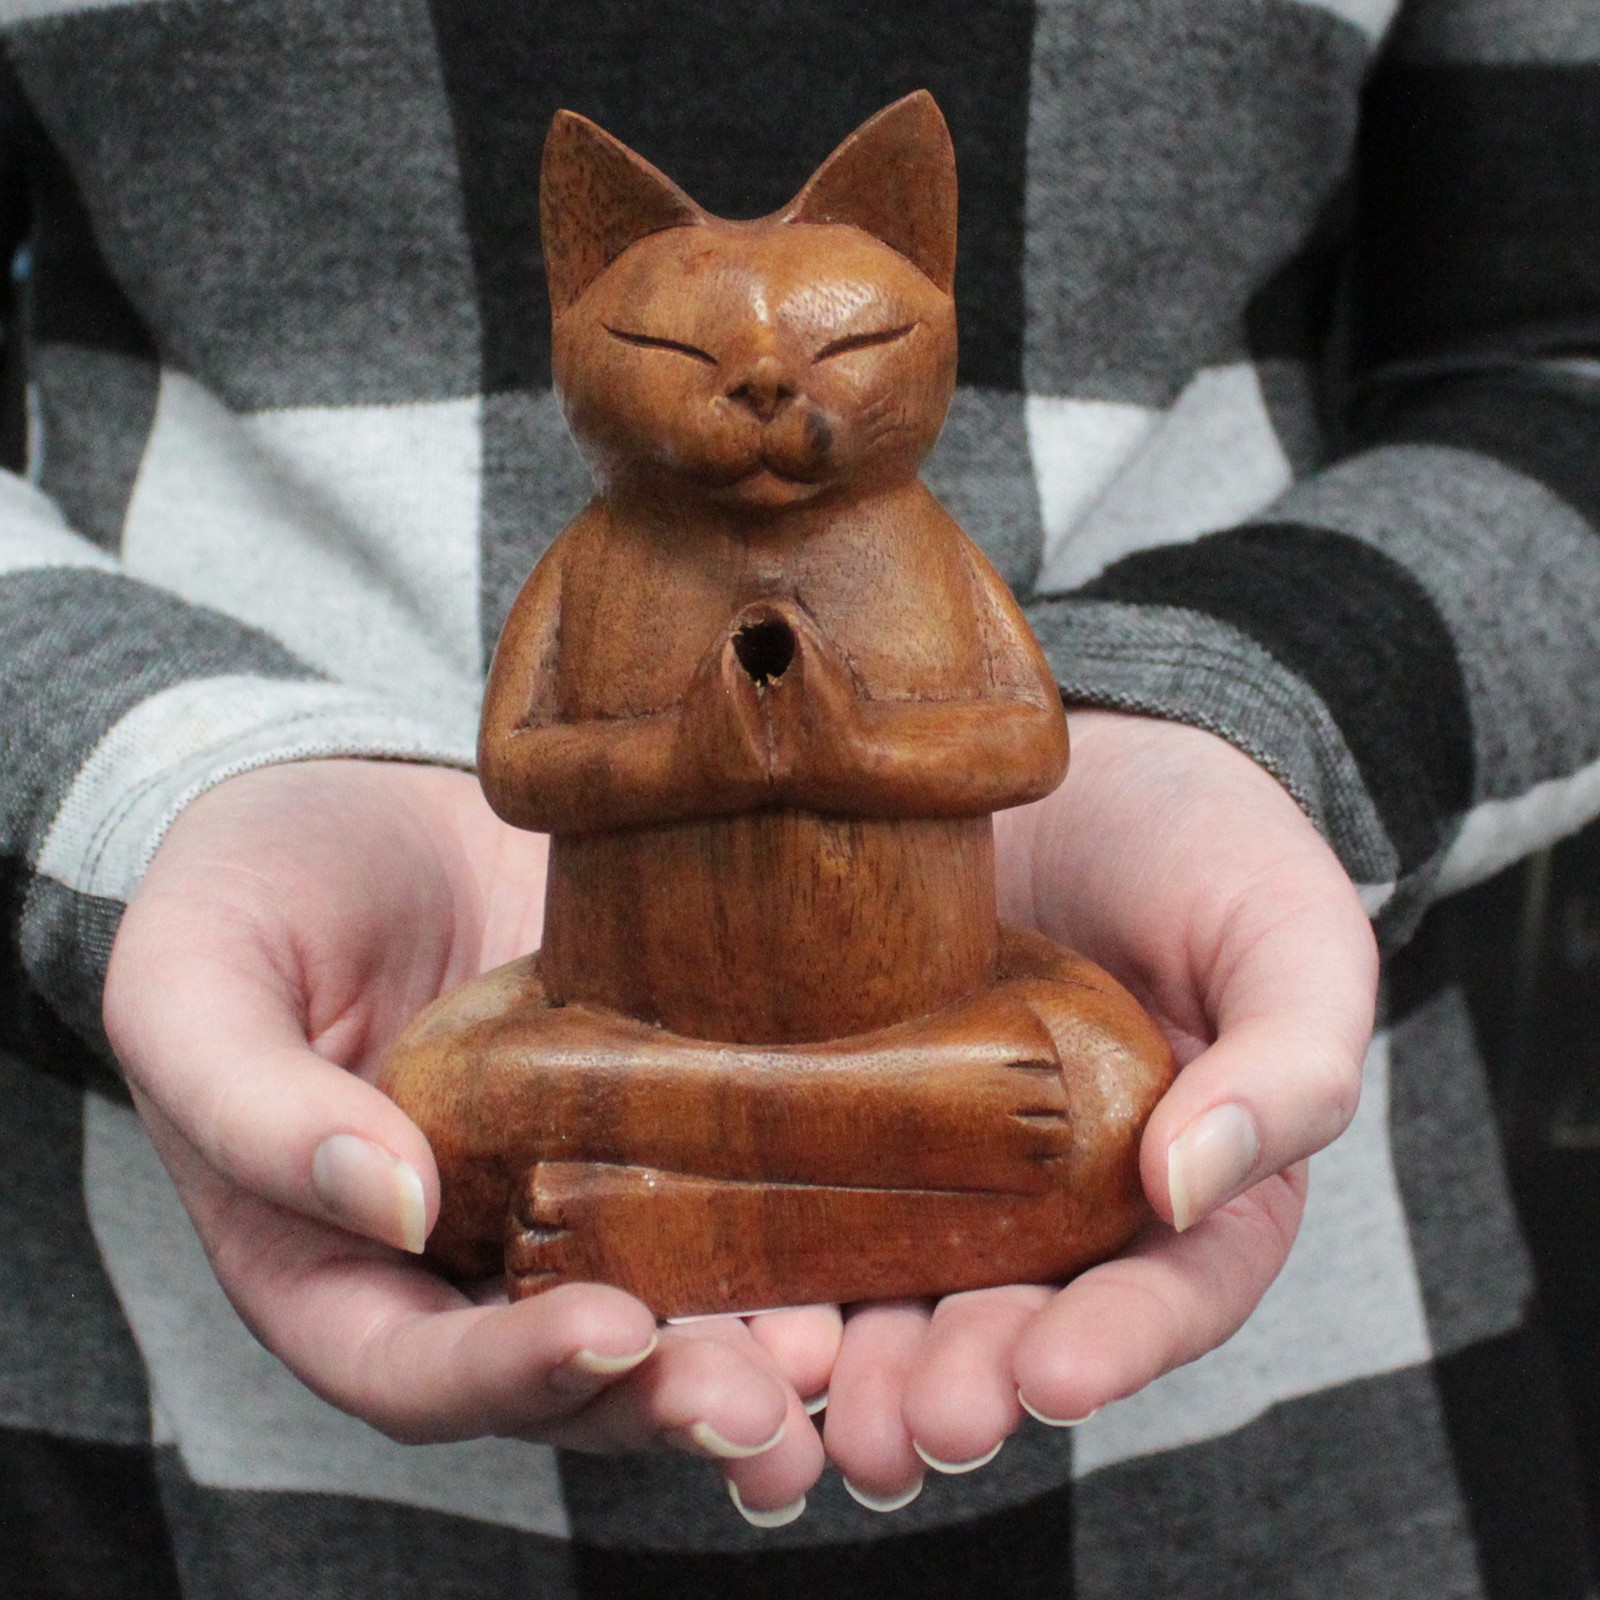 Wooden Carved Incense Burners - Med Yoga Cat